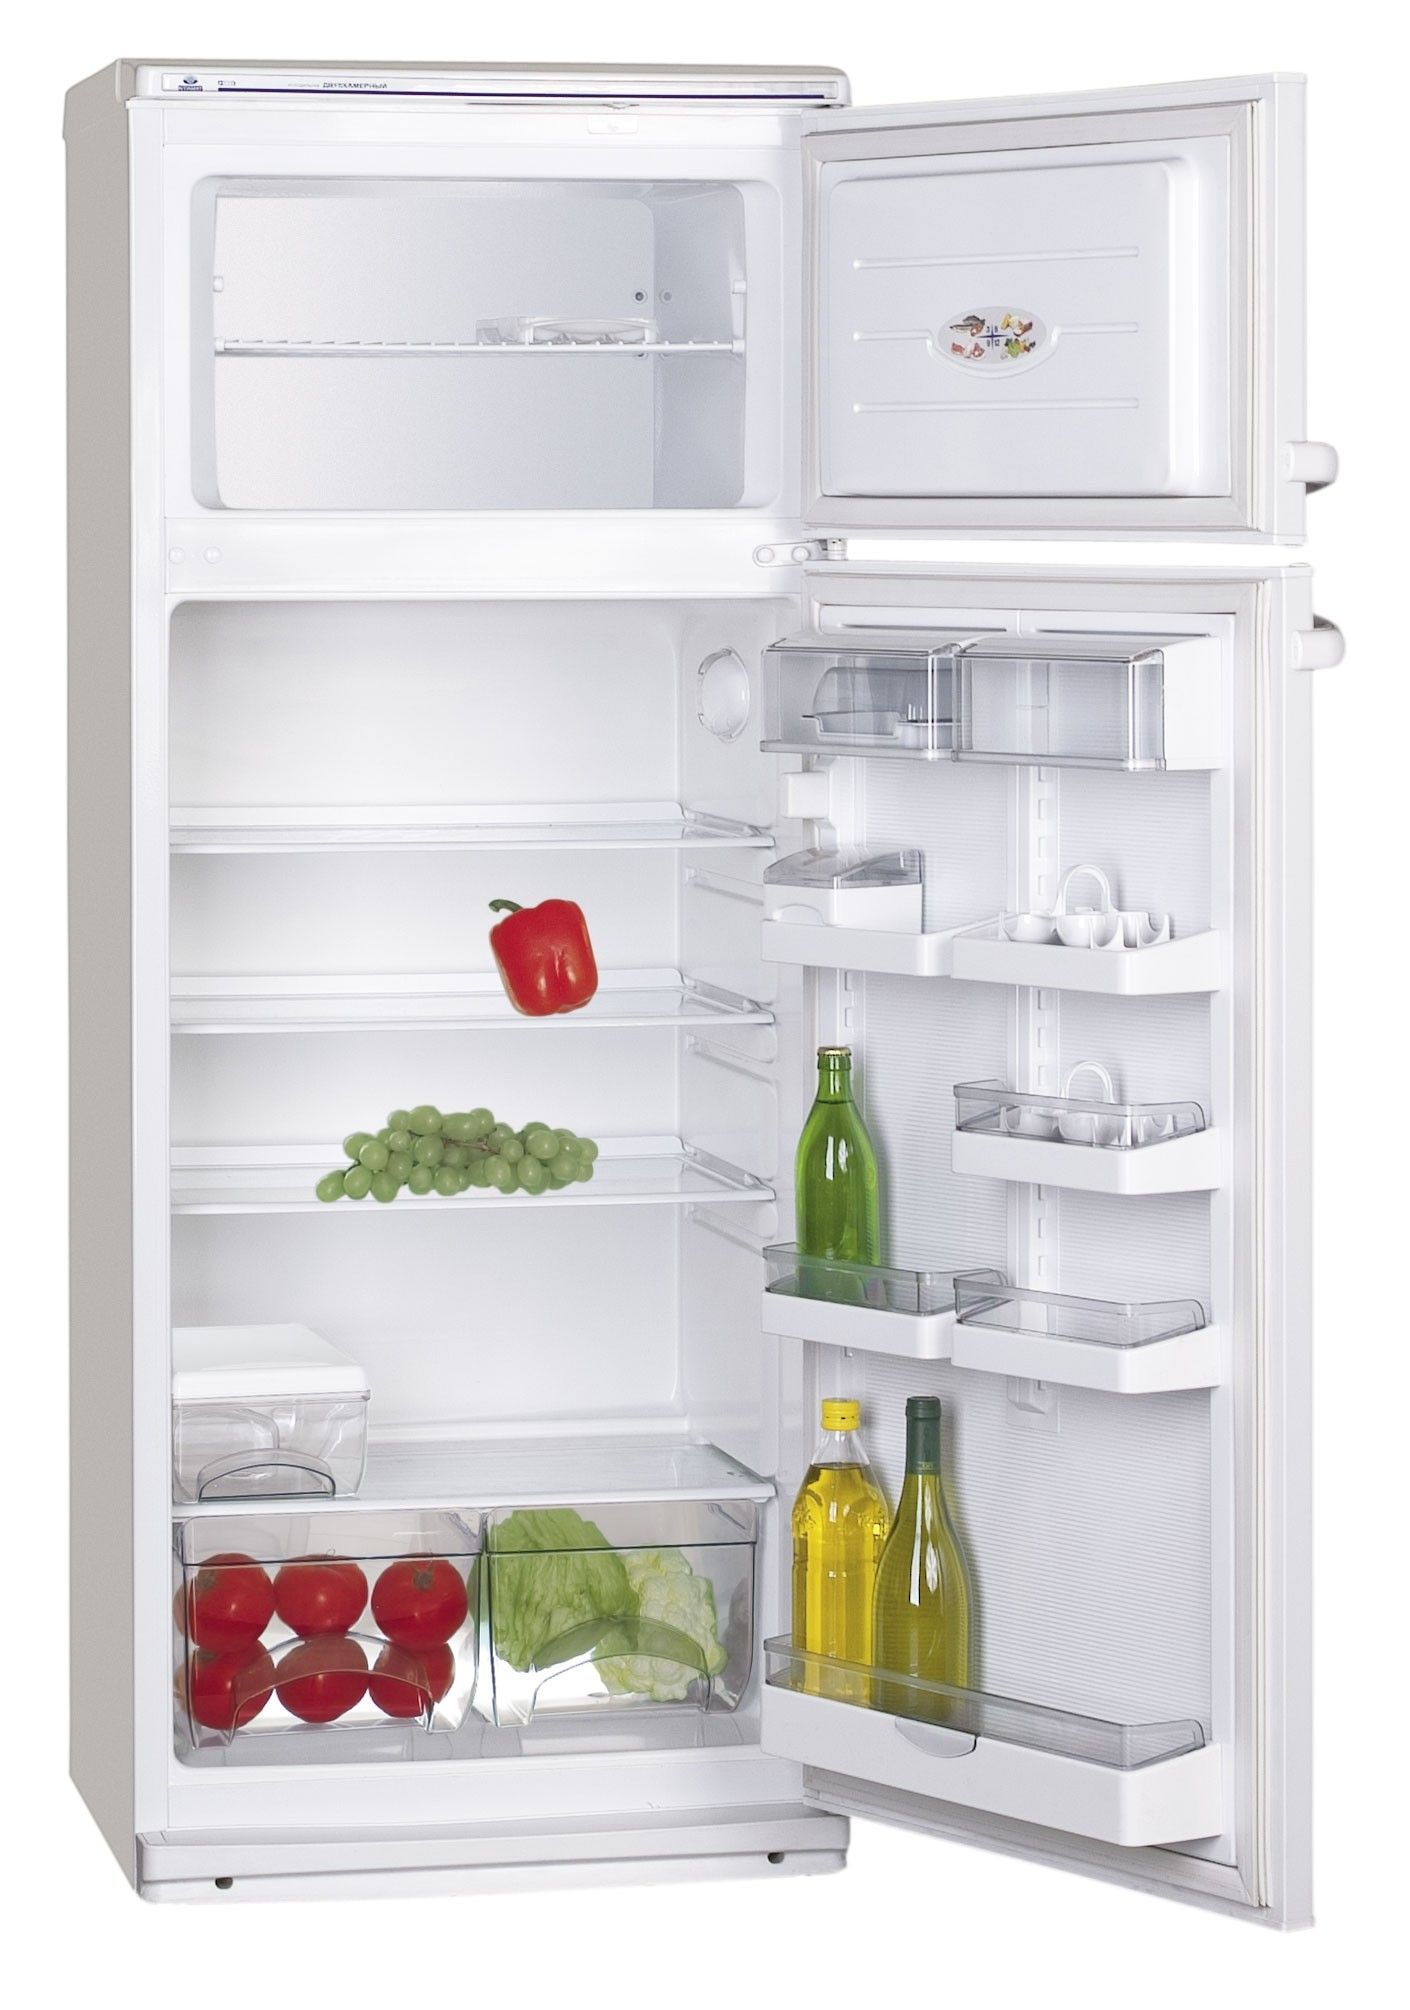 Холодильник двухкамерный купить в москве цена. Холодильник Атлант 2835-90. Холодильник Атлант MXM-2835-90. Холодильник Атлант двухкамерный МХМ 2808-90. Холодильник ATLANT МХМ 2835-90 белый.